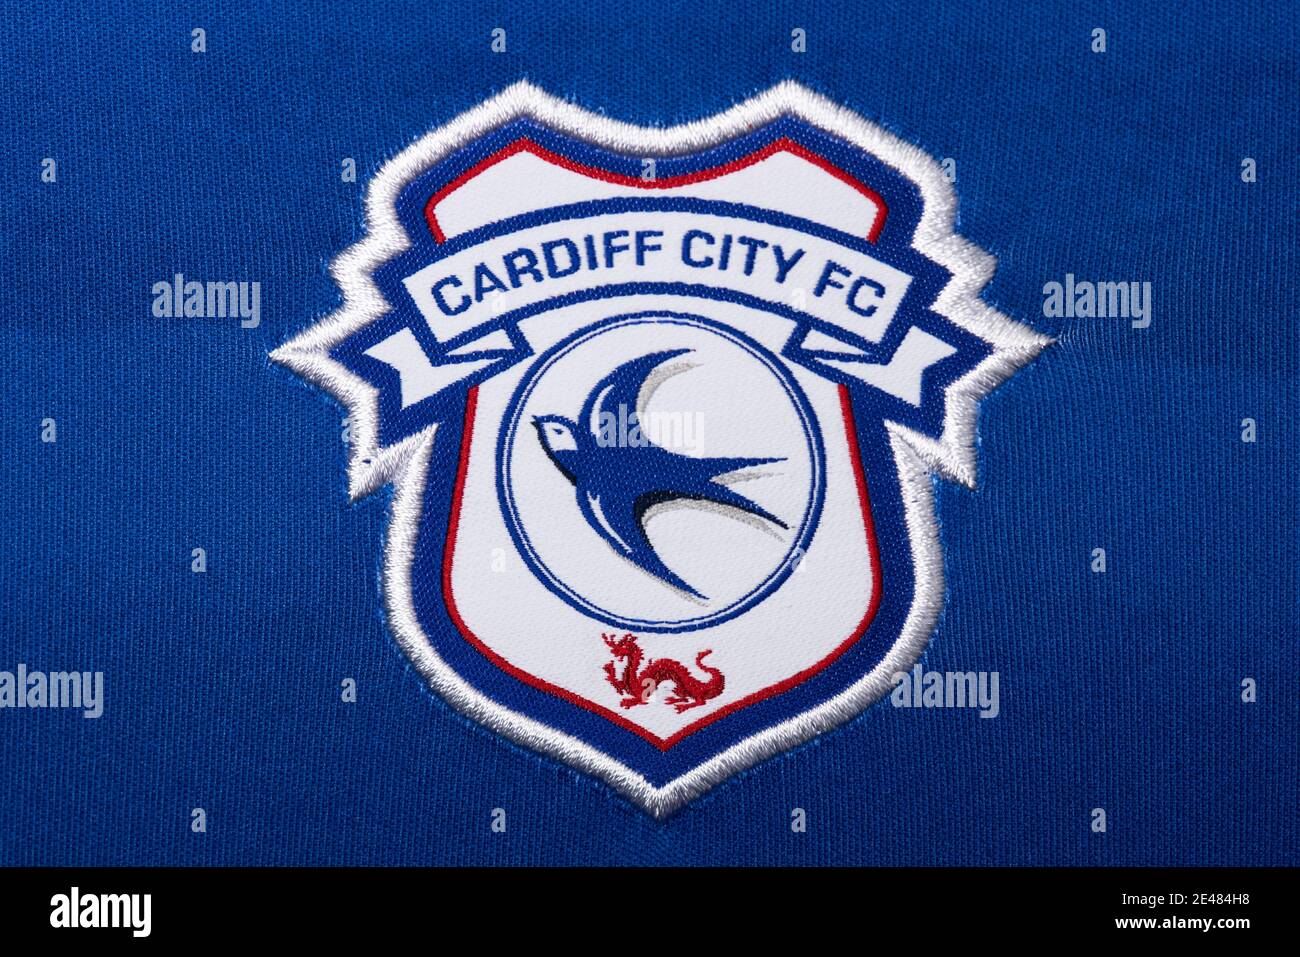 Primo piano del badge Cardiff City FC Foto Stock